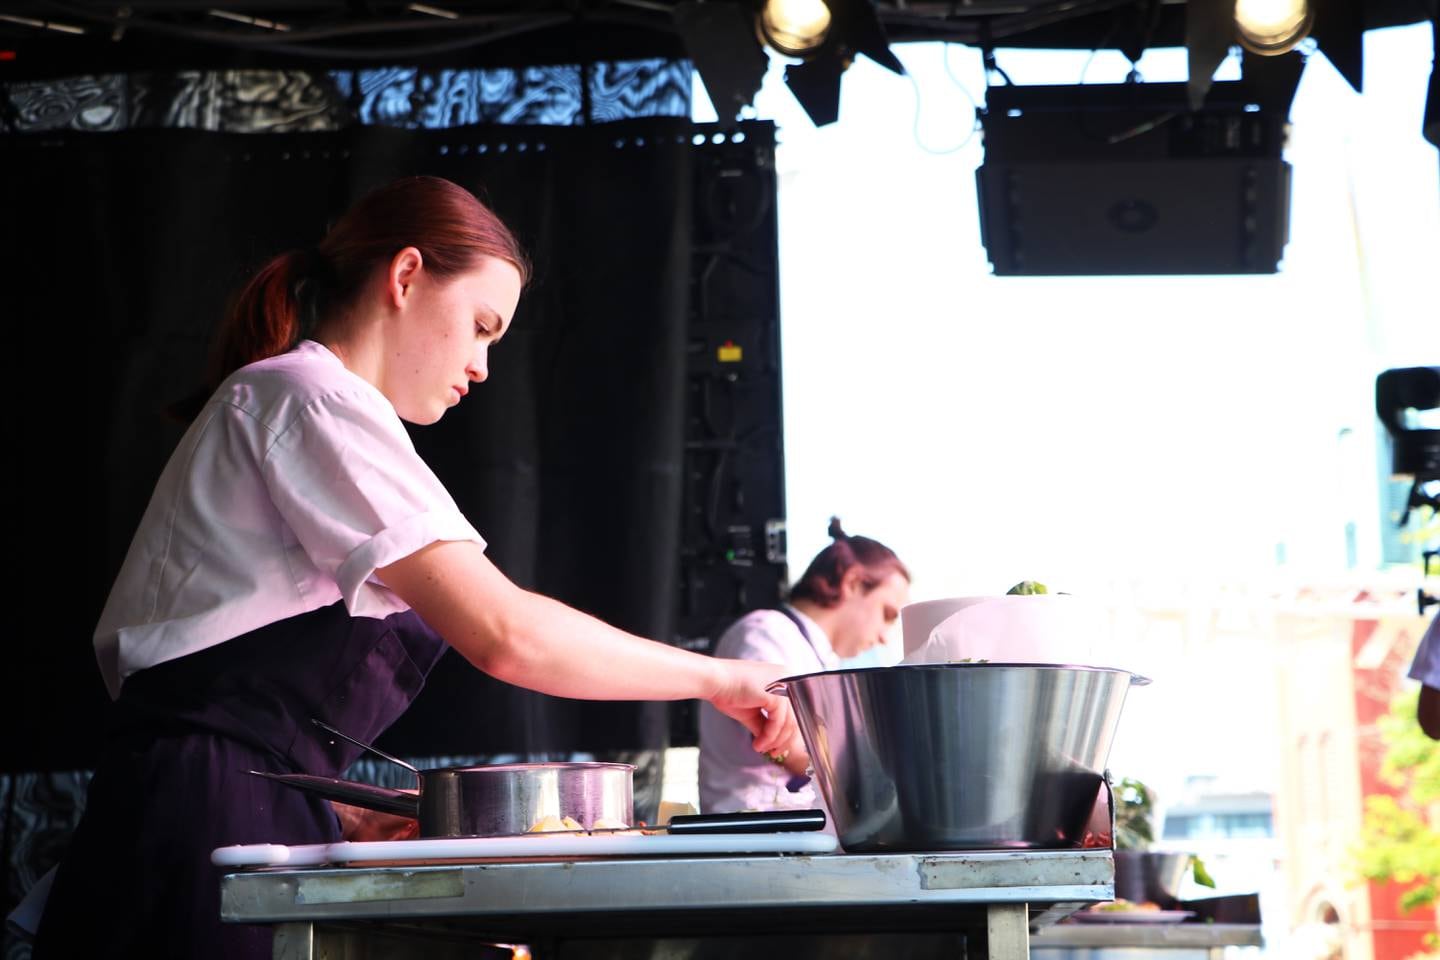 Det ble arrangert kokkekamp på scenen i Bakgården på Nytorget mellom lærlingene Sara Årsland og Audrius Simutis. Det var Simutis som stakk av med seieren og dermed avanserte videre i kokkekonkurransen.